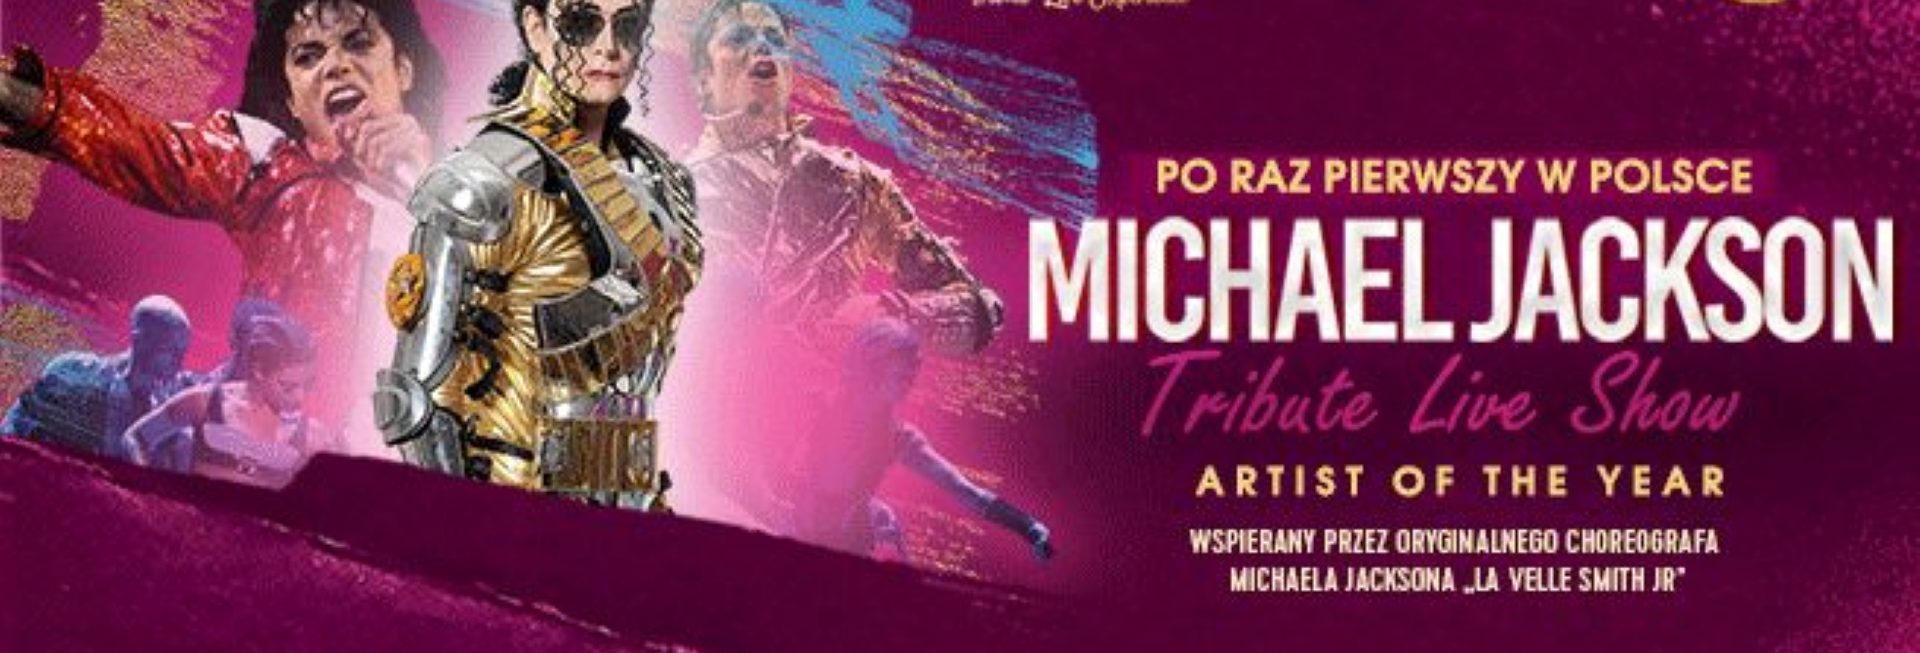 Plakat zapraszający w czwartek 13 czerwca 2024 r. do Olsztyna na koncert Tribute Live Show Michael Jackson Filharmonia Olsztyn 2024.